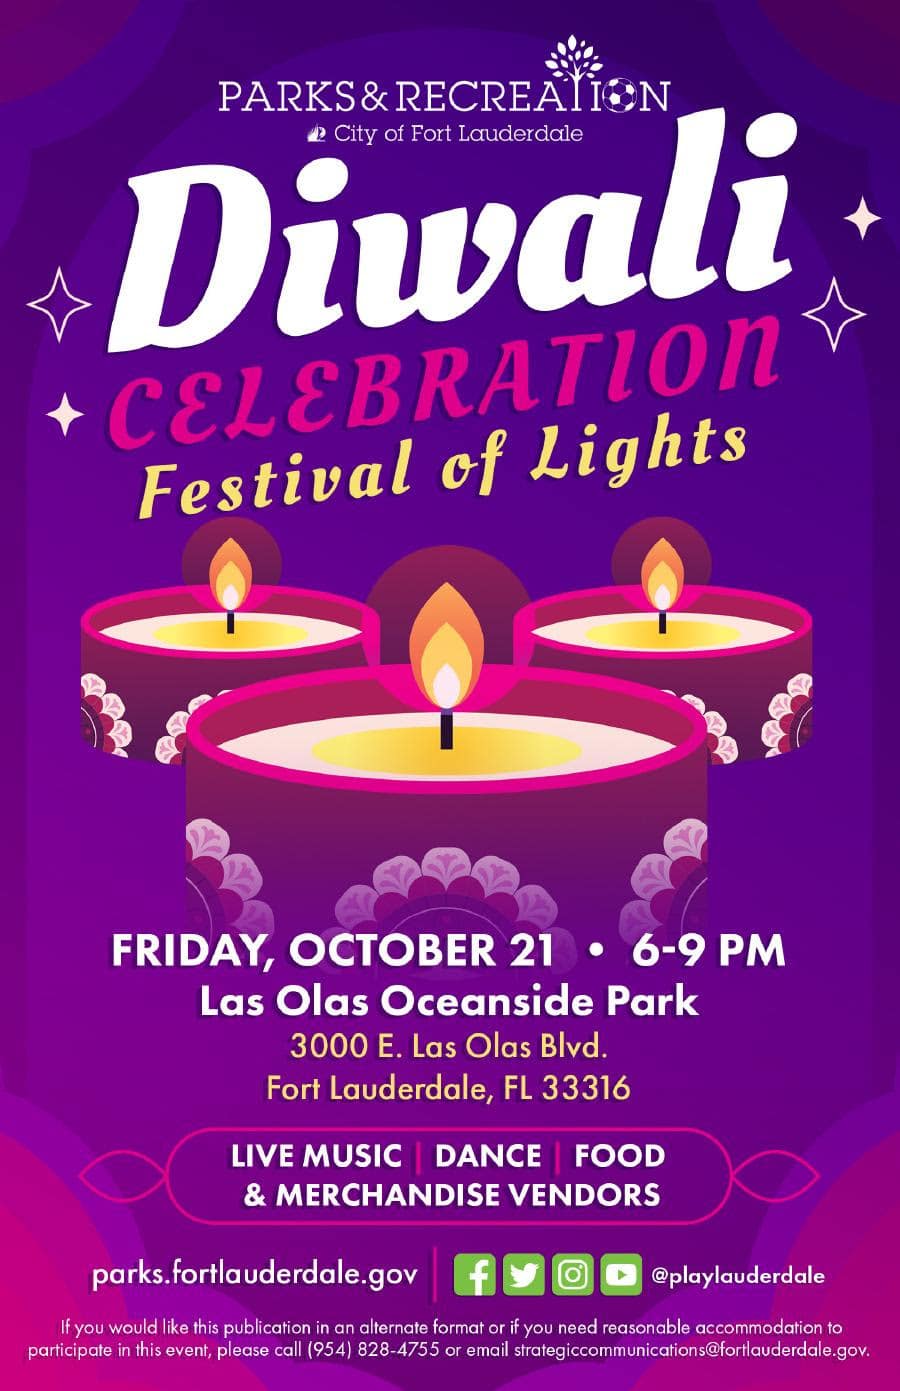 Diwali Celebration Festival of Lights